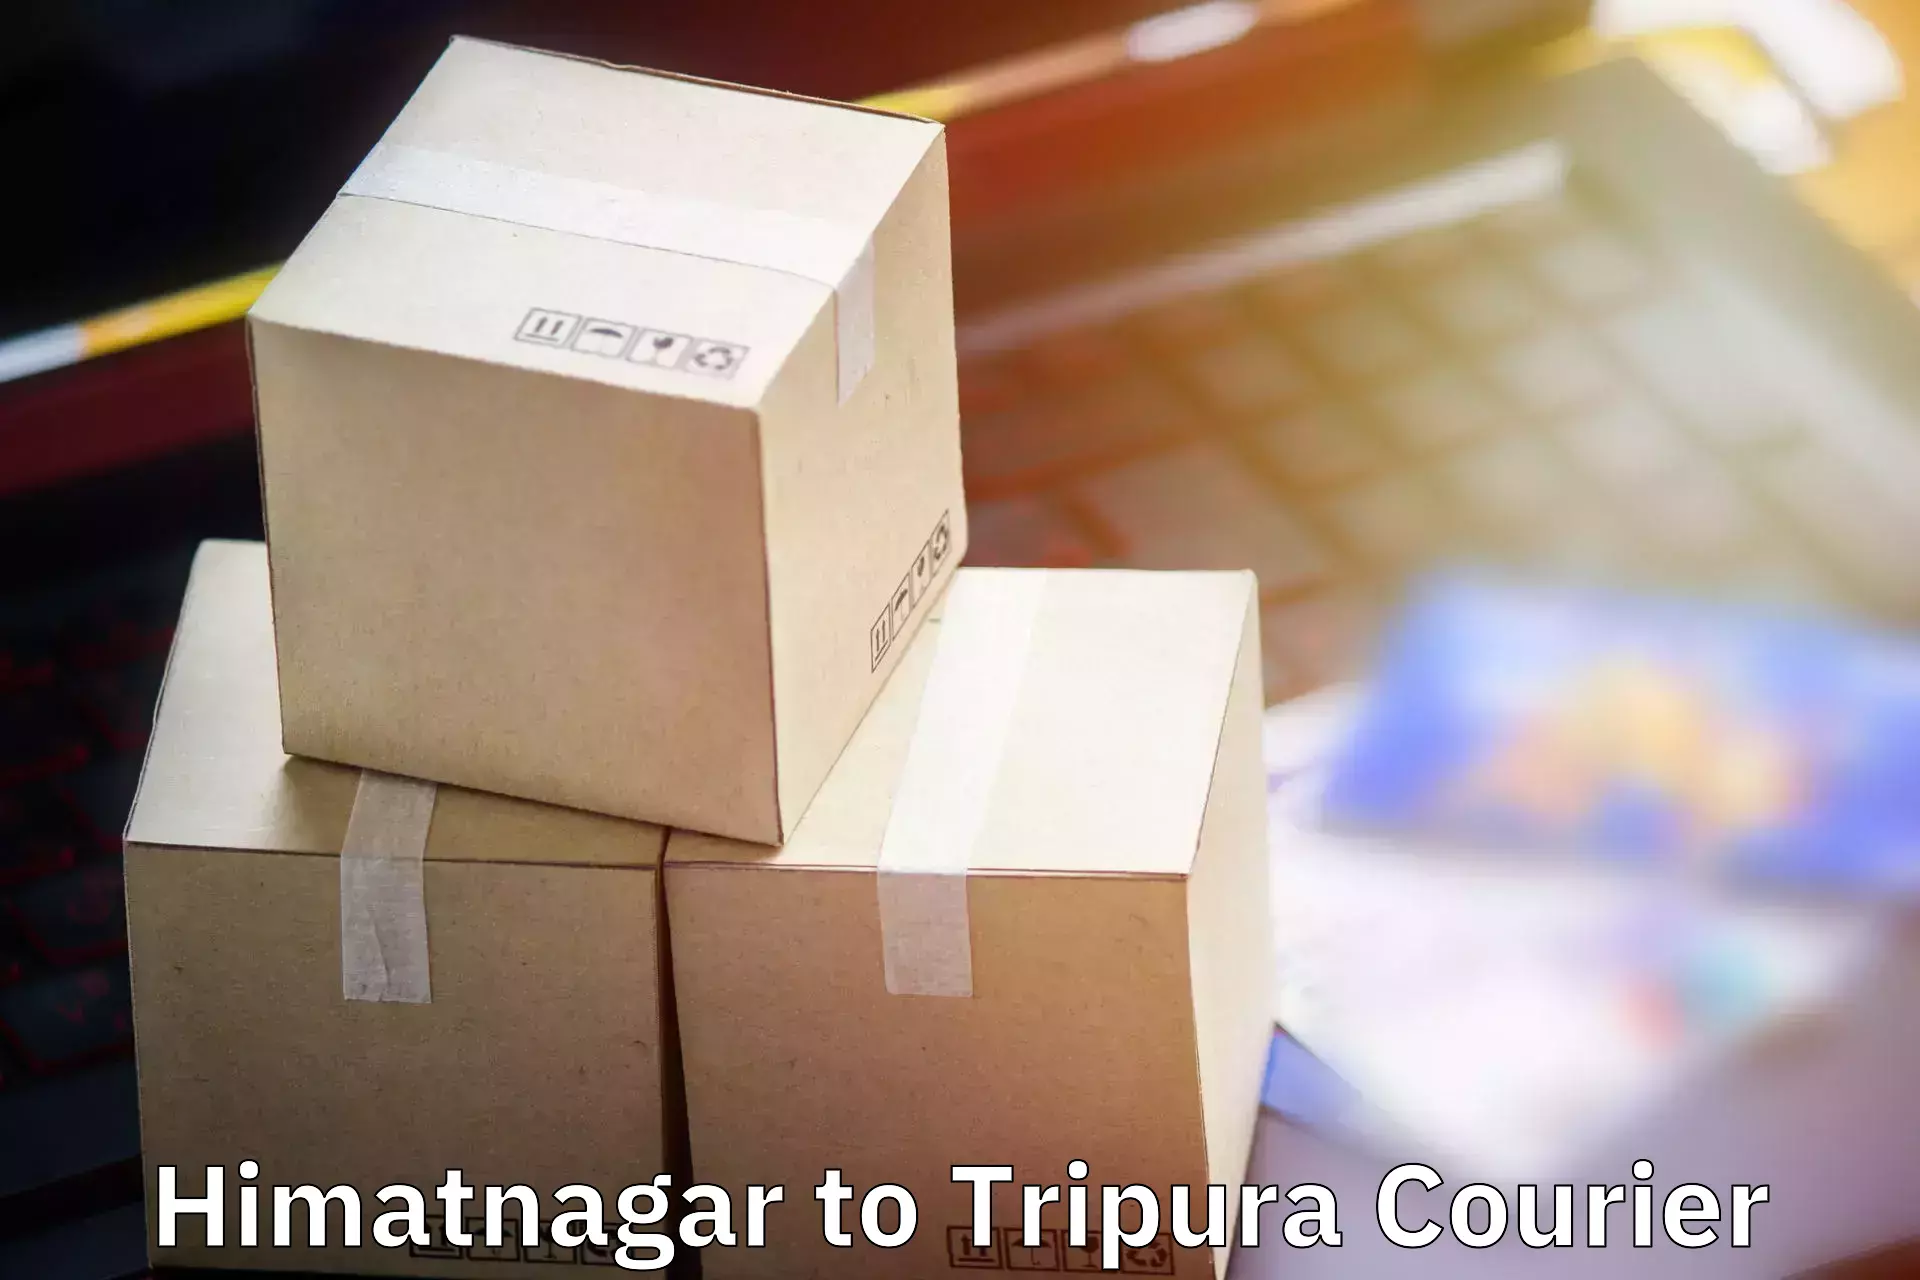 Baggage shipping experts Himatnagar to North Tripura